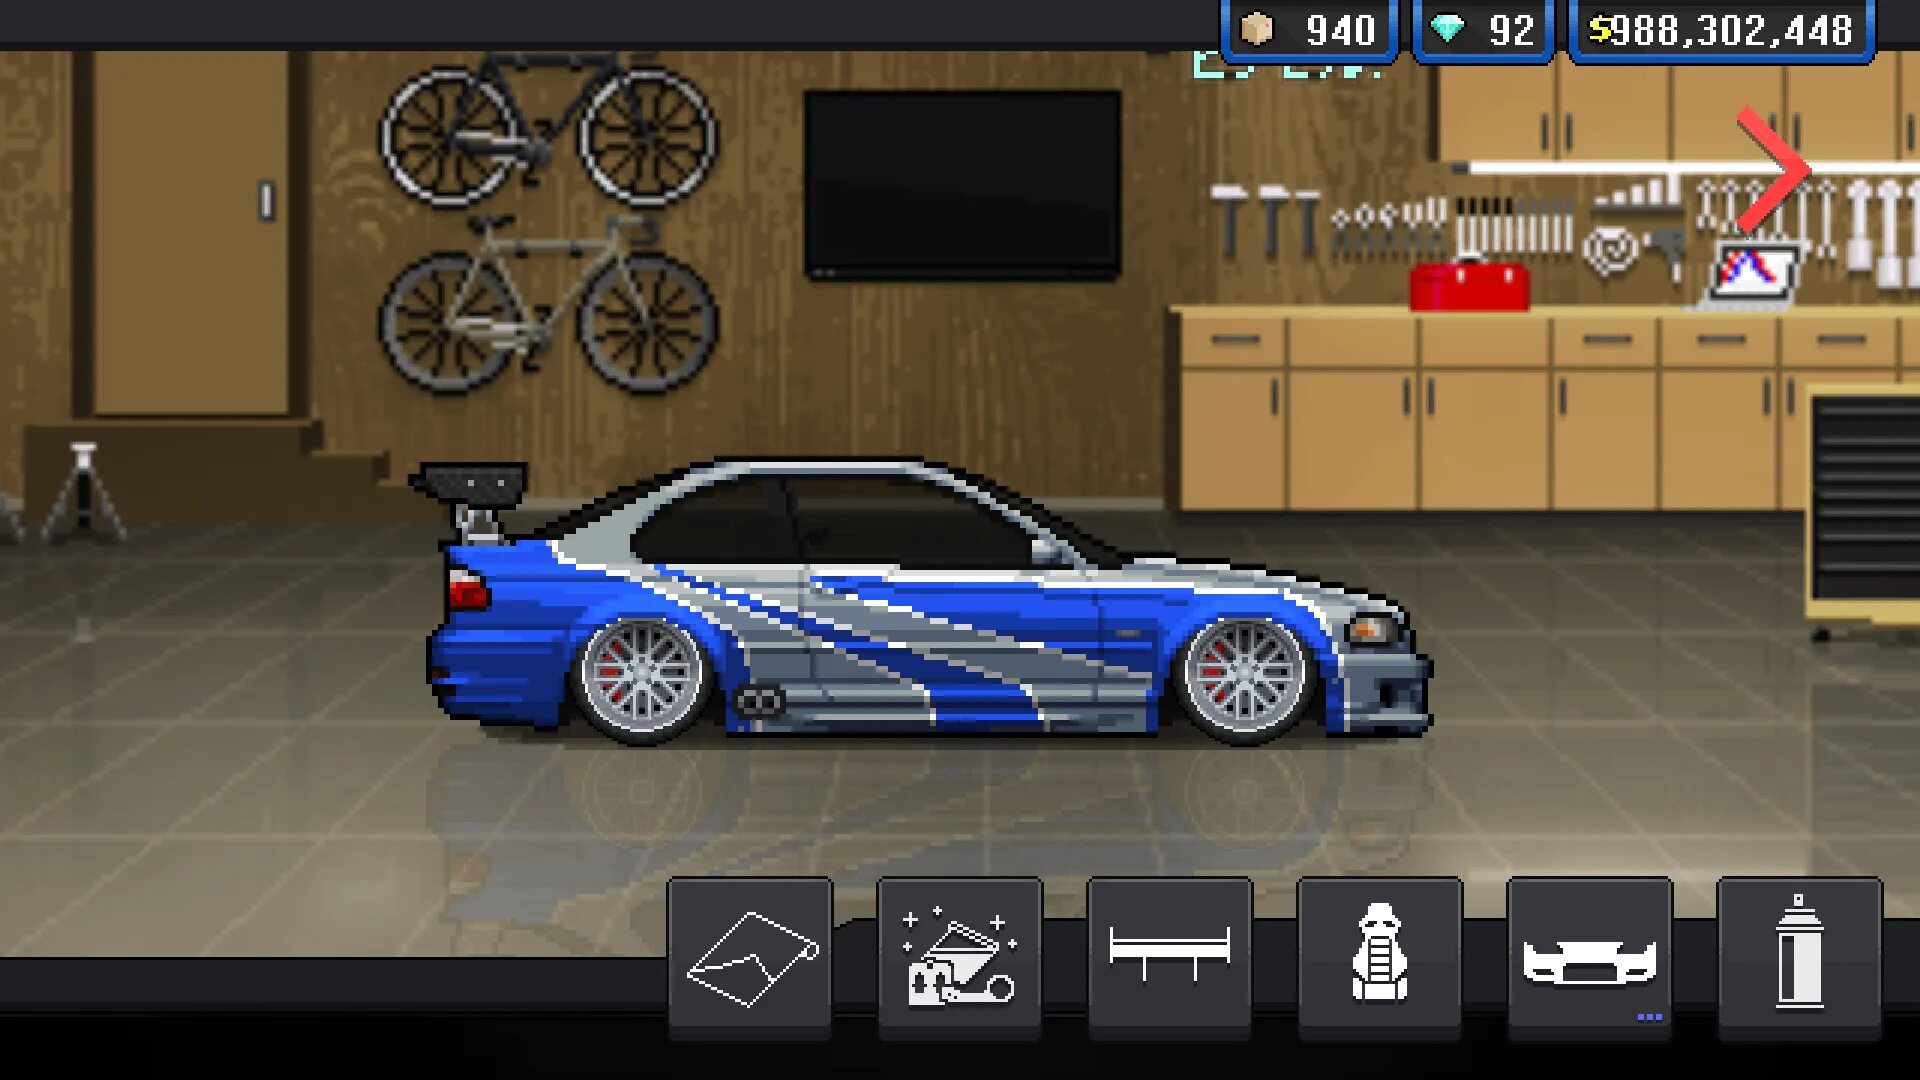 Pixel car Racer BMW m3 GTR. БМВ м3 GTR. BMW m3 e46 GTR Pixel car Racer. BMW m3 GTR.